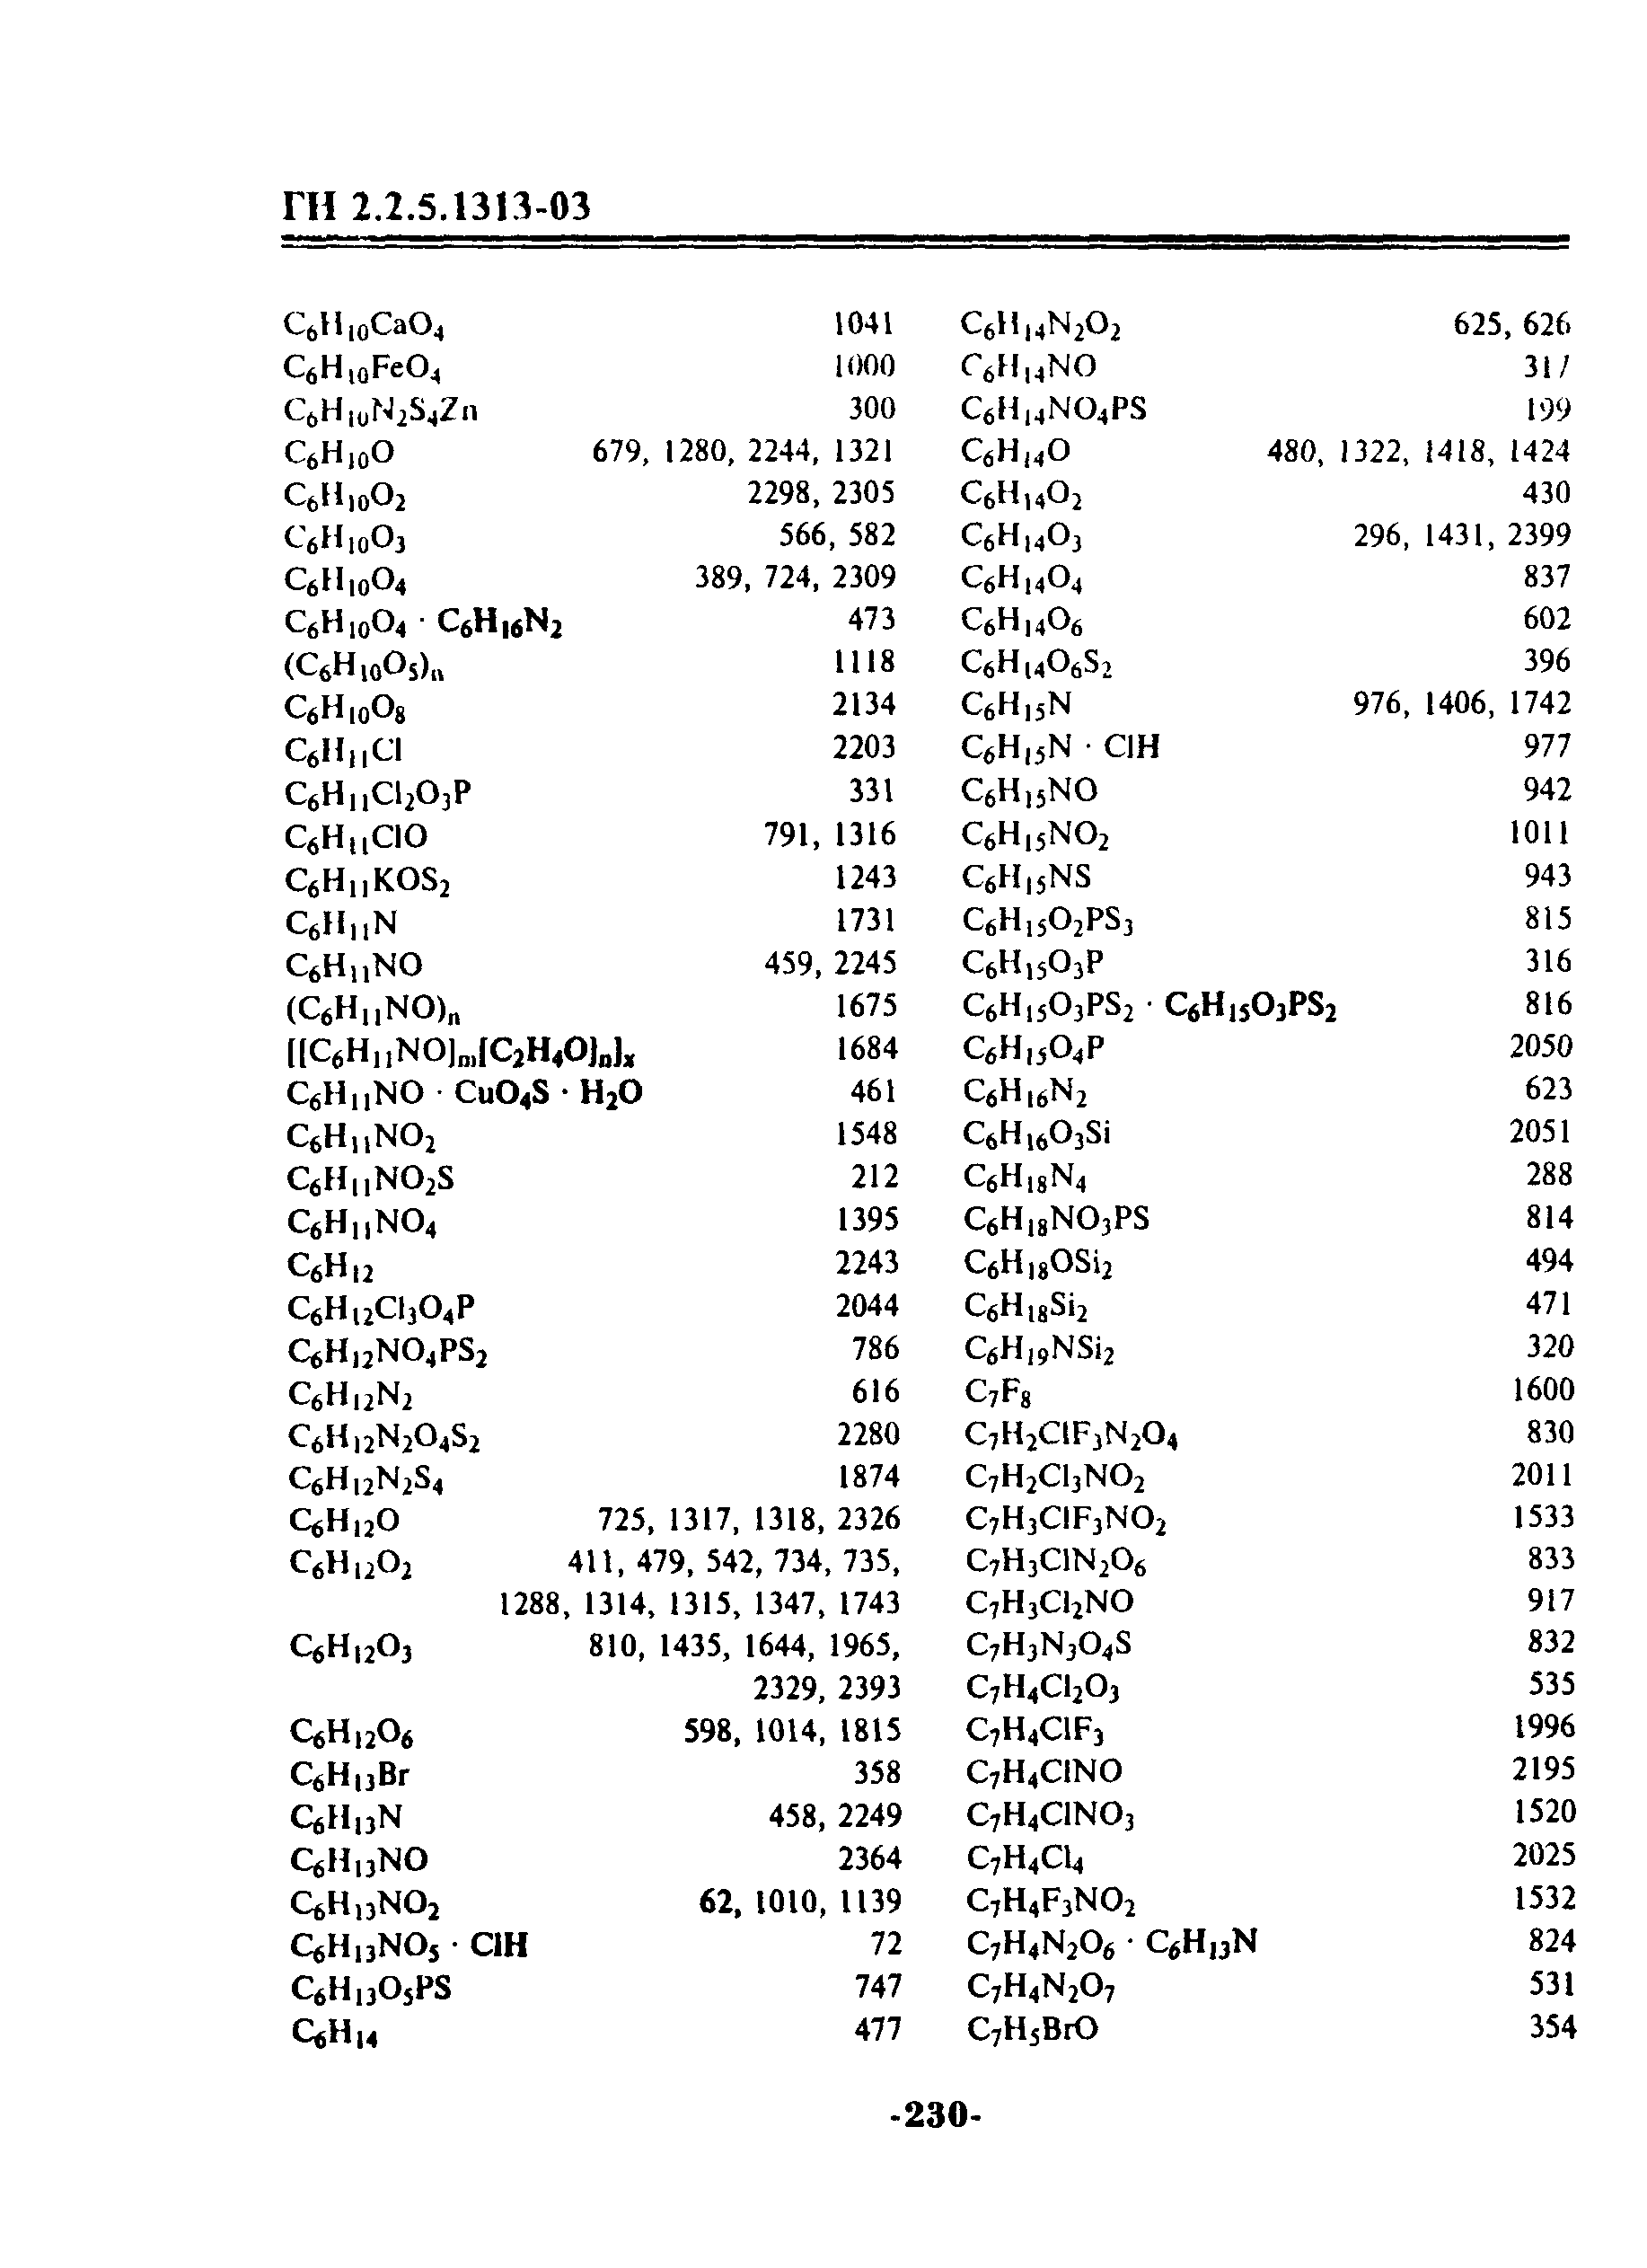 ГН 2.2.5.1313-03